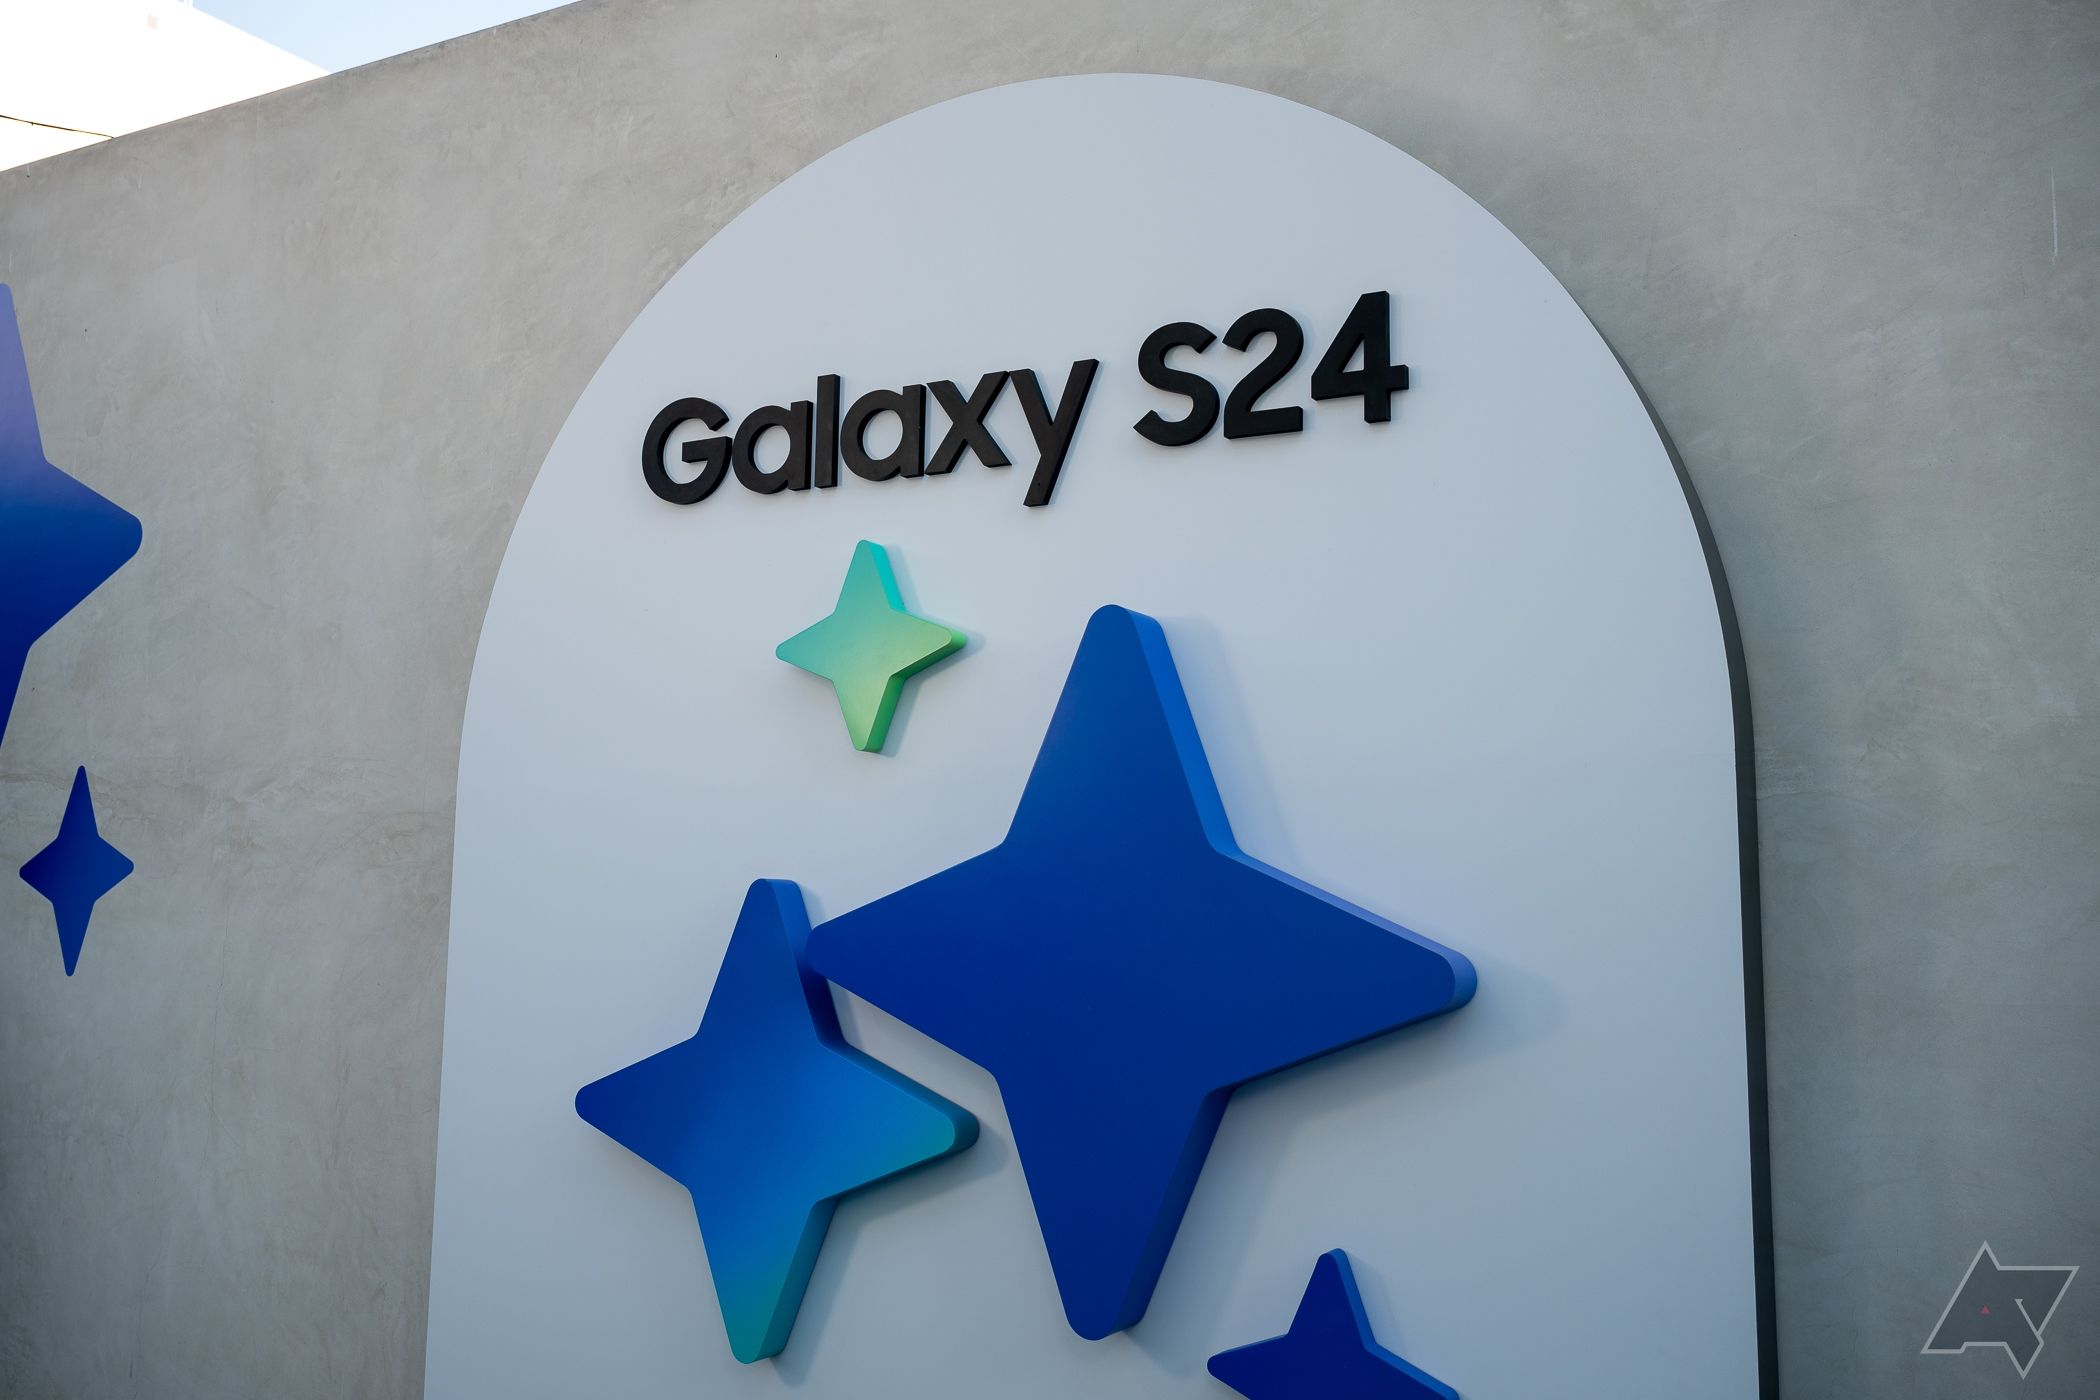 Samsungova série Galaxy S24 využívá Google Gemini pro úpravy obrazu a další funkce